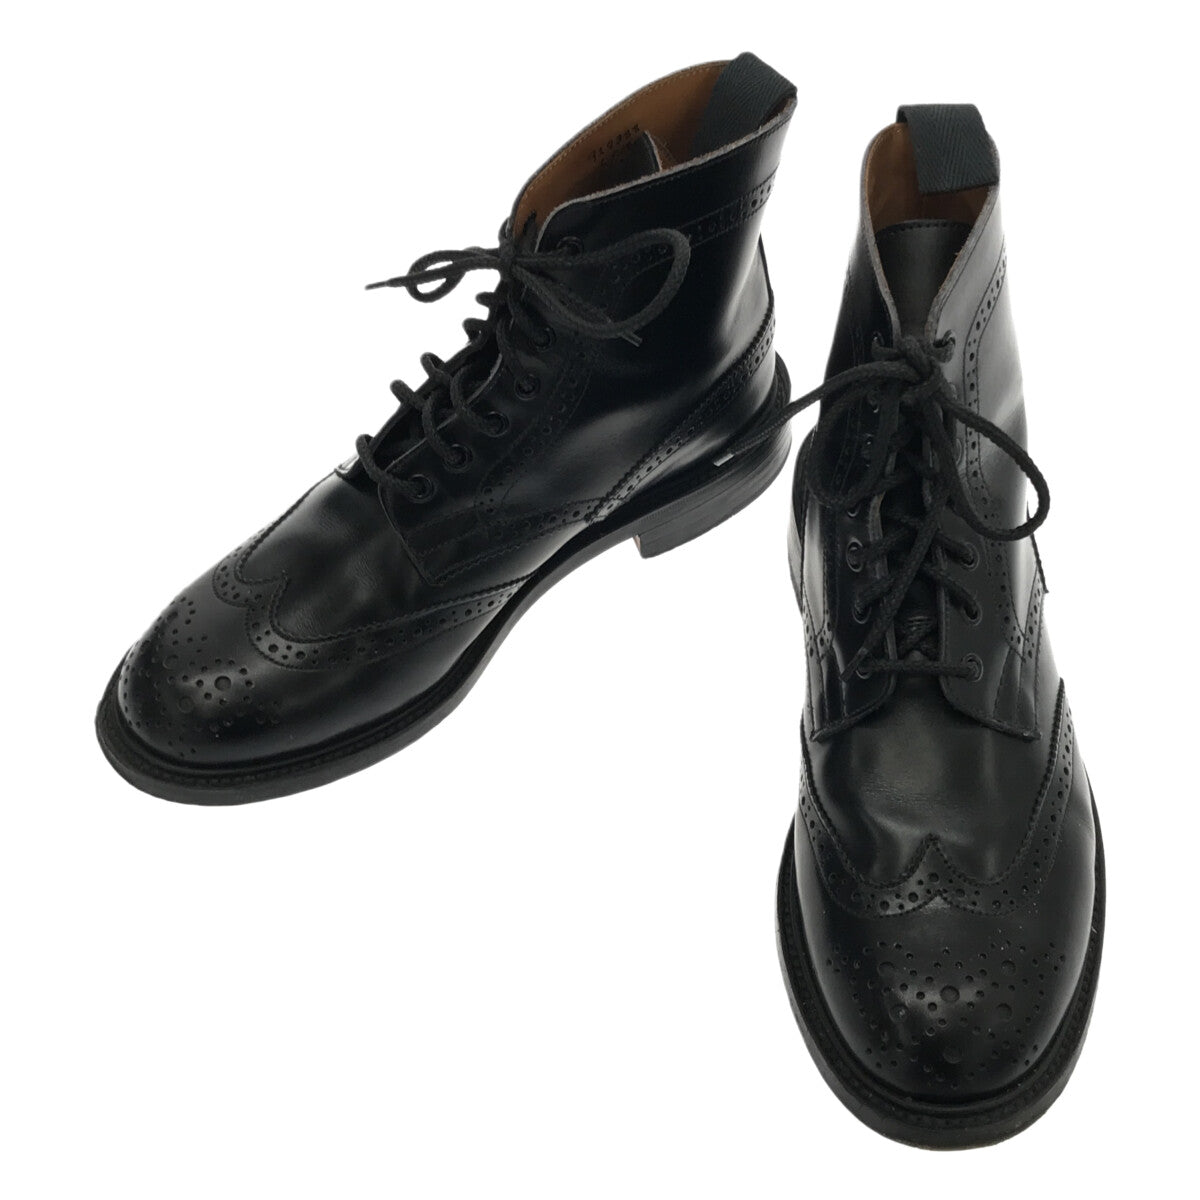 靴/シューズトリッカーズ／Tricker's レースアップブーツ シューズ 靴 メンズ 男性 男性用レザー 革 本革 ブラック 黒  M2508 MALTON モールトン Brogue Boots ダブルソール カントリーブーツ ウイングチップ レザーソール グッドイヤーウェルト製法